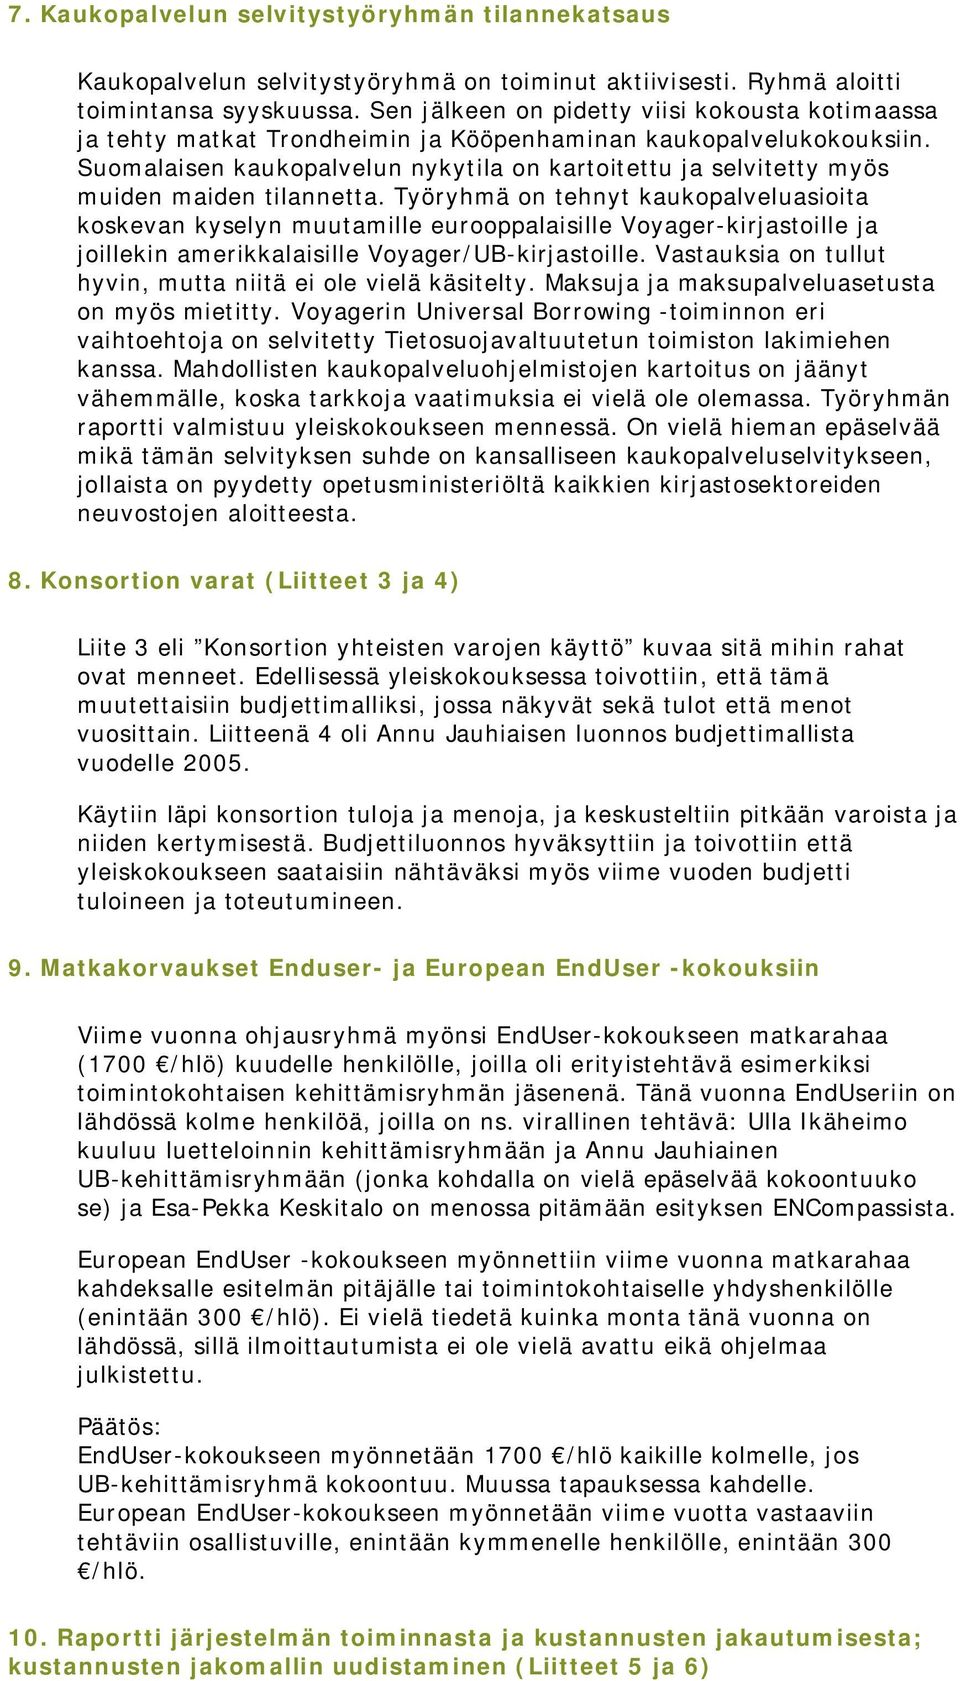 Suomalaisen kaukopalvelun nykytila on kartoitettu ja selvitetty myös muiden maiden tilannetta.